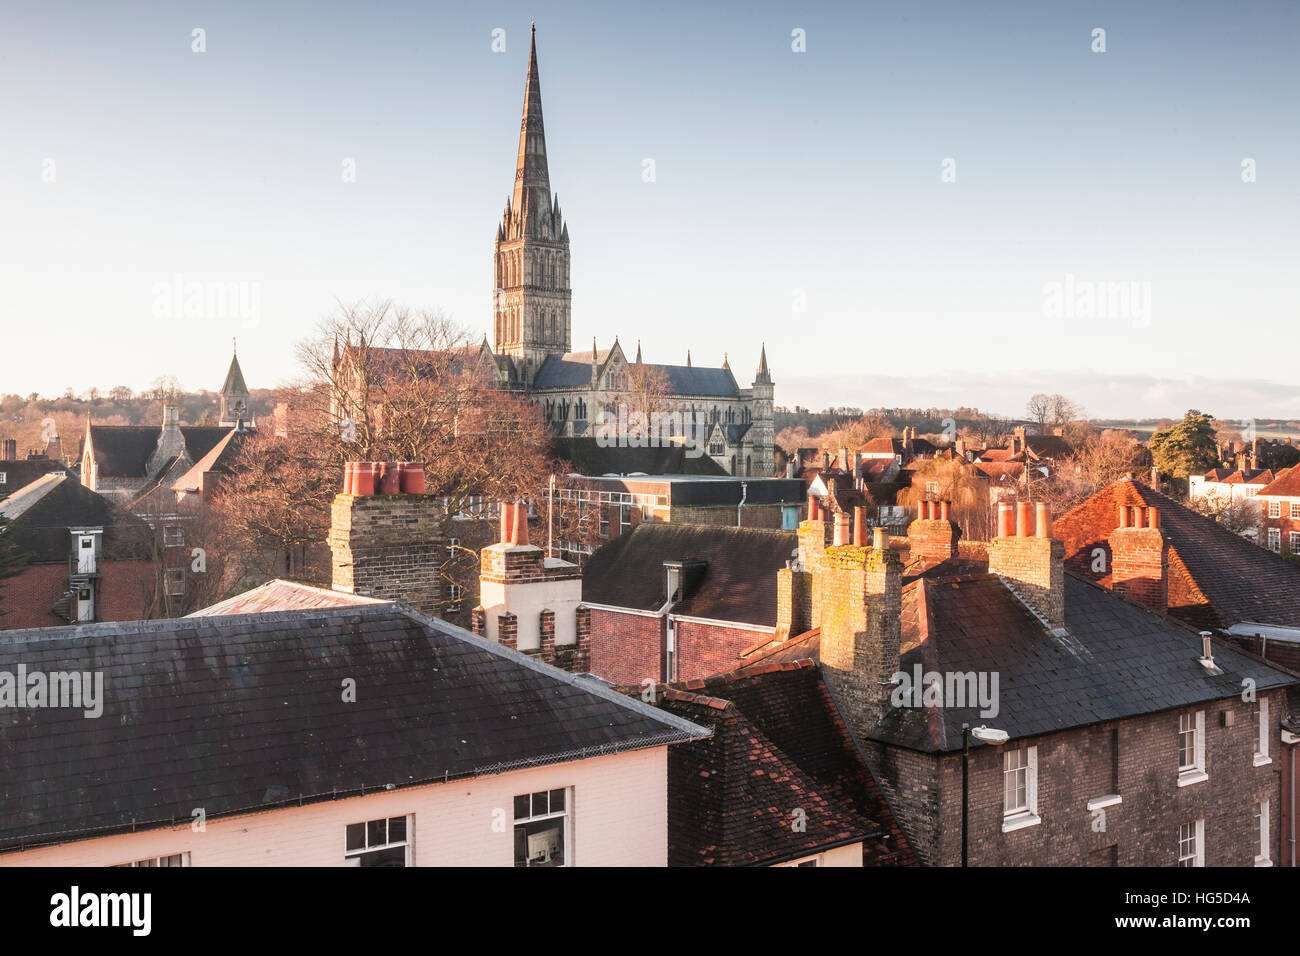 La catedral de Salisbury a través de los tejados de la ciudad, Salisbury, Wiltshire, Inglaterra, Reino Unido Foto de stock